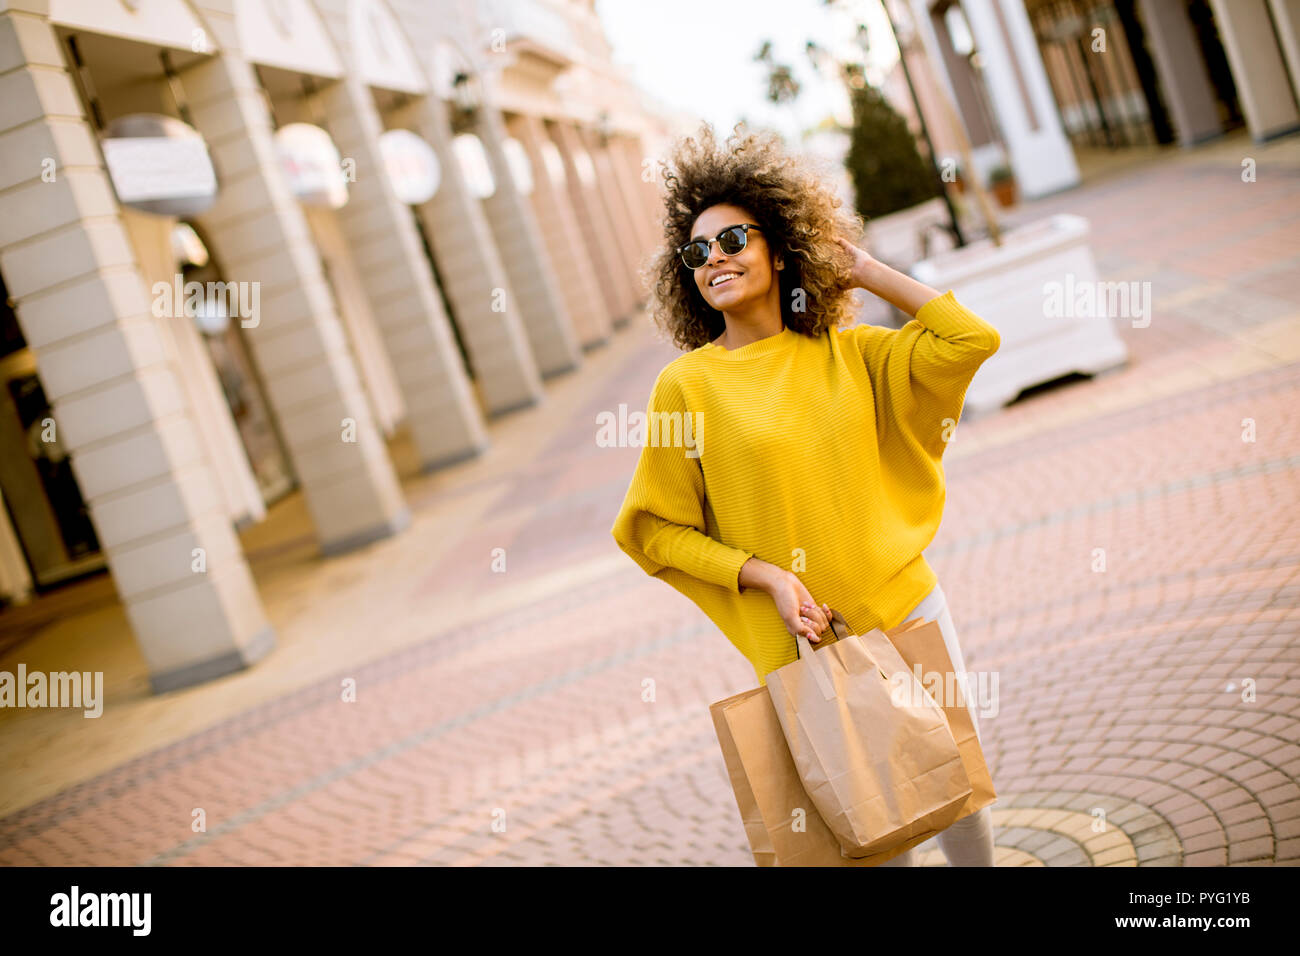 Jolie jeune femme noire avec les cheveux bouclés shopping Banque D'Images